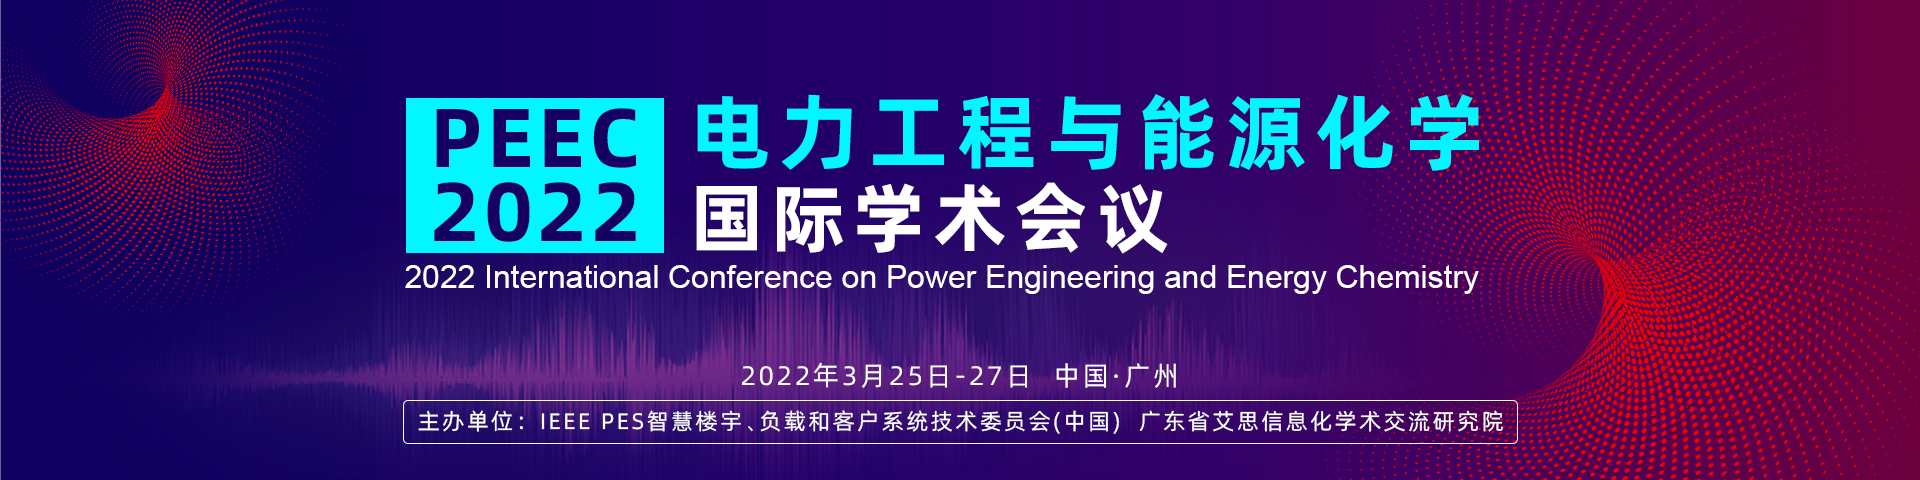 3月广州-PEEC-2022-艾思平台1920x480-陈军-20211129.jpg